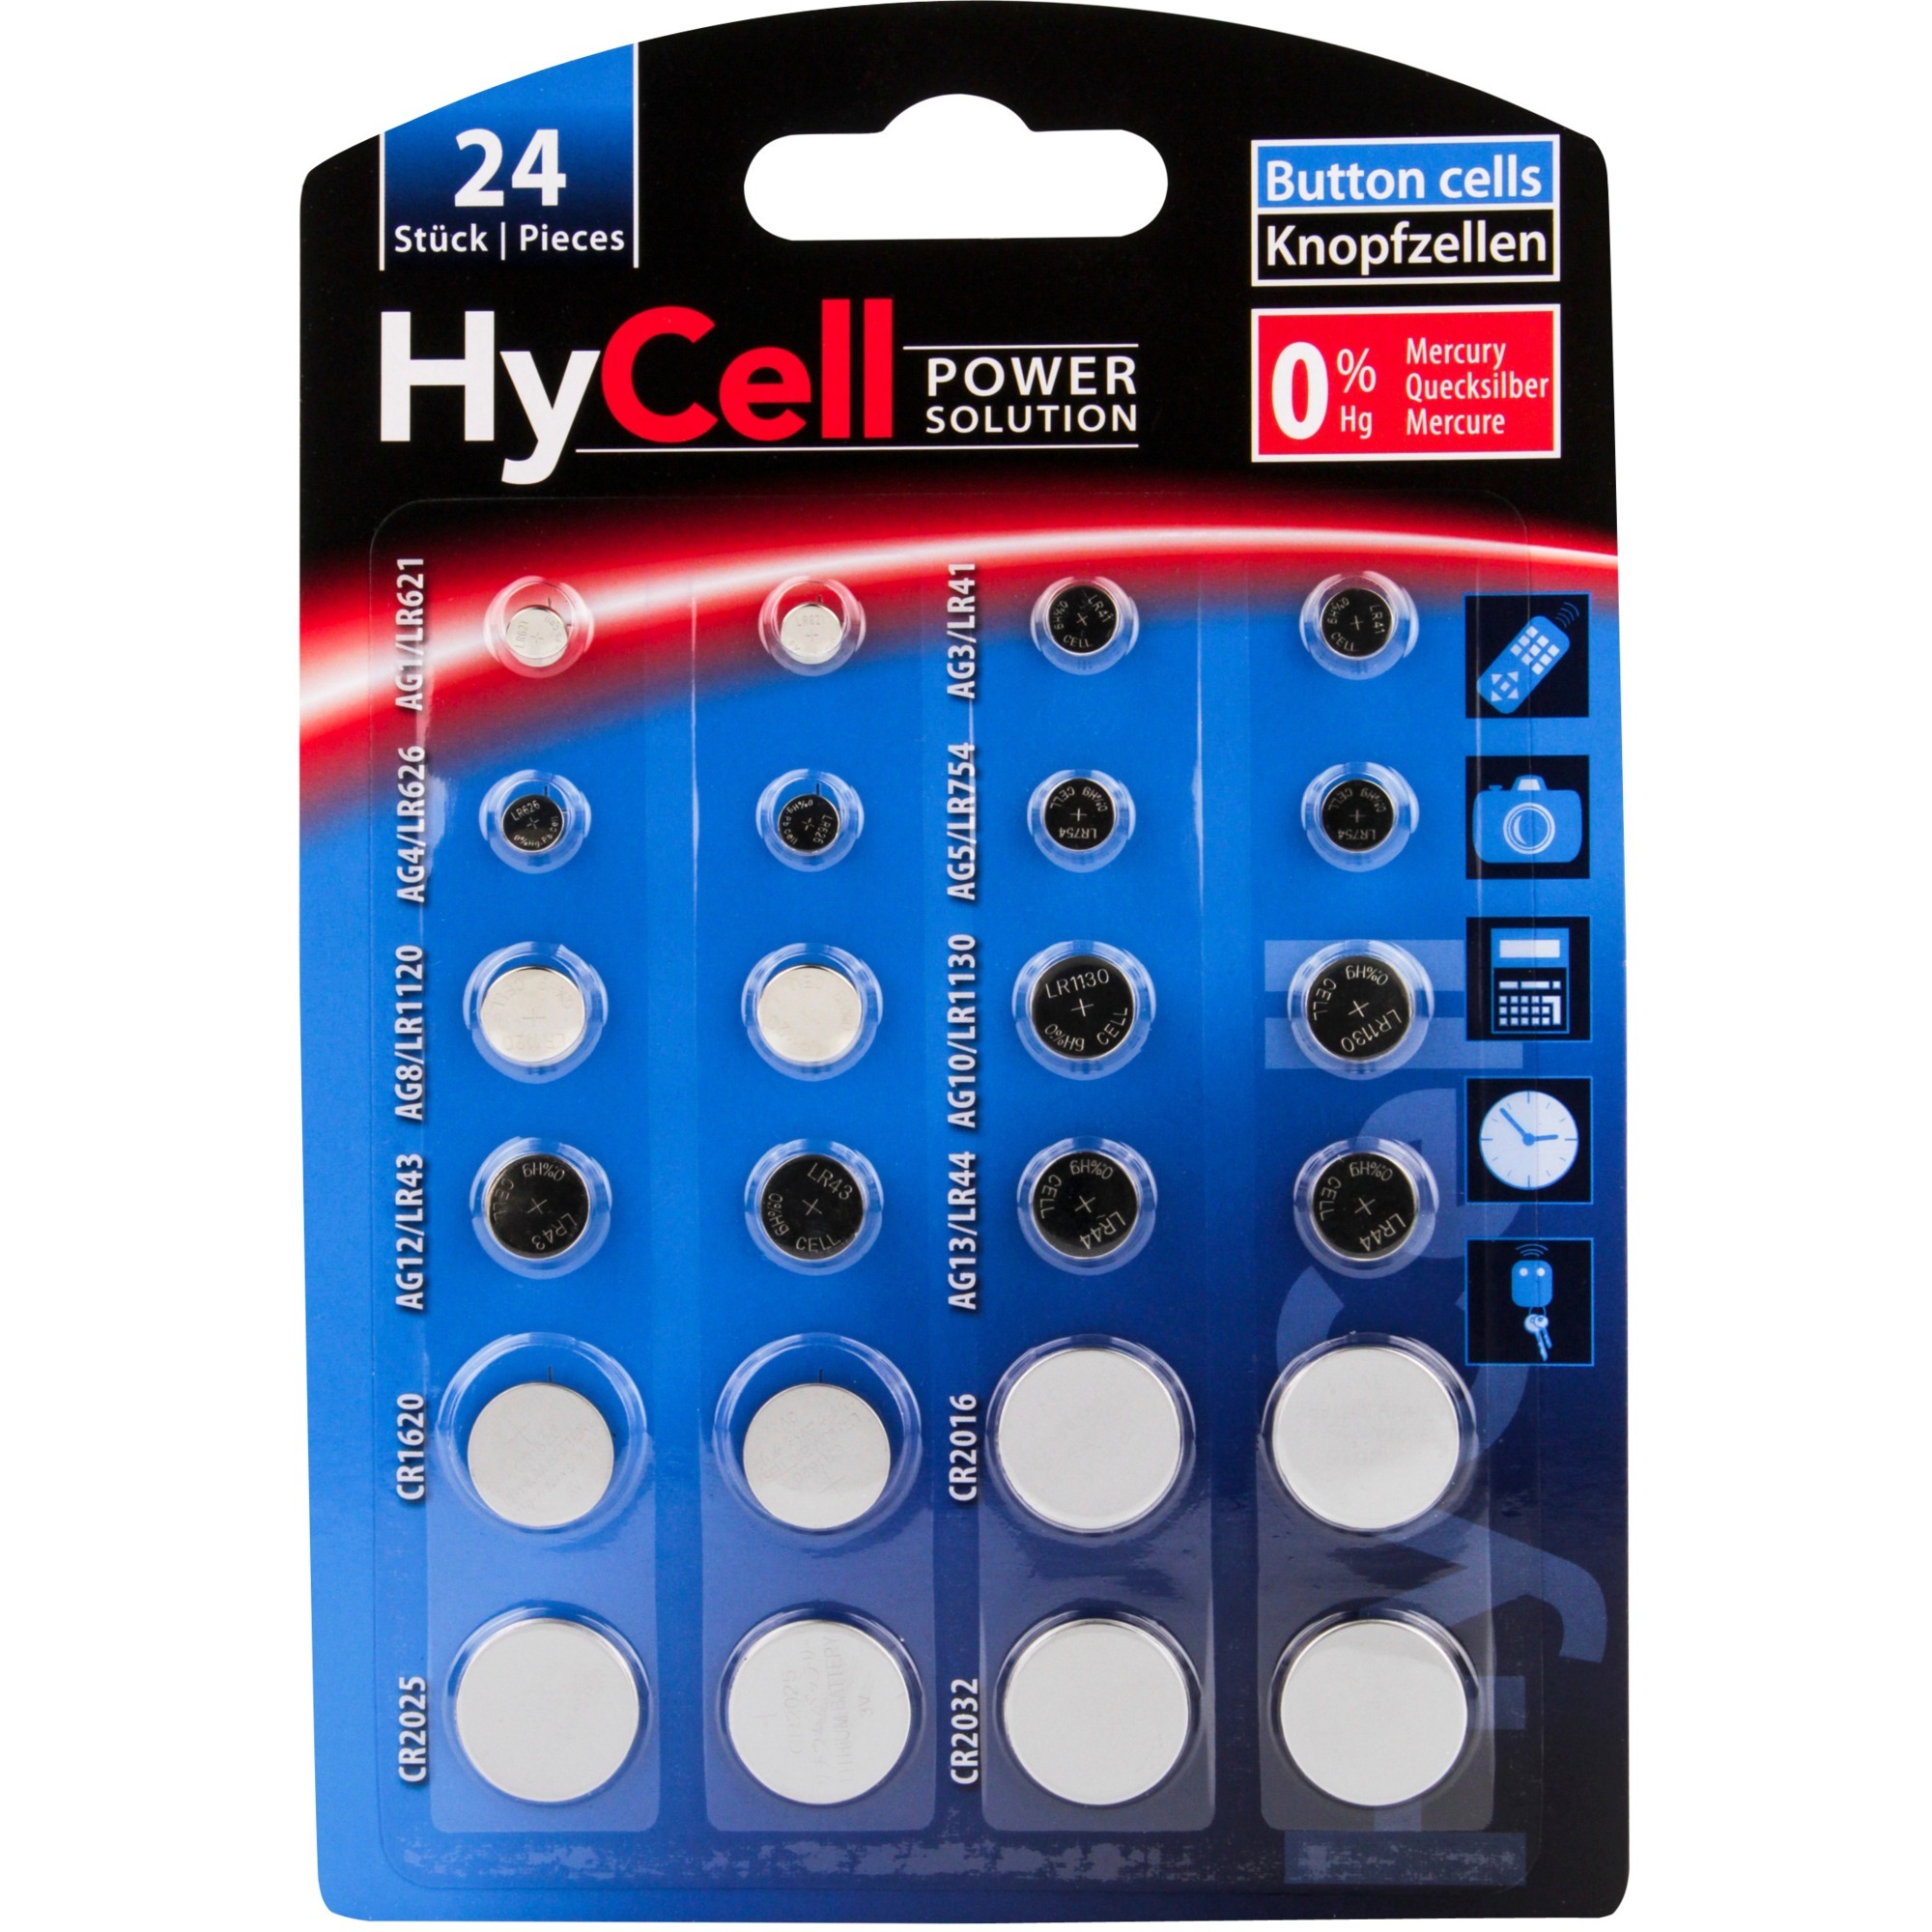 Image of Alternate - Alkaline Knopfzellen 24er-Set, Batterie online einkaufen bei Alternate